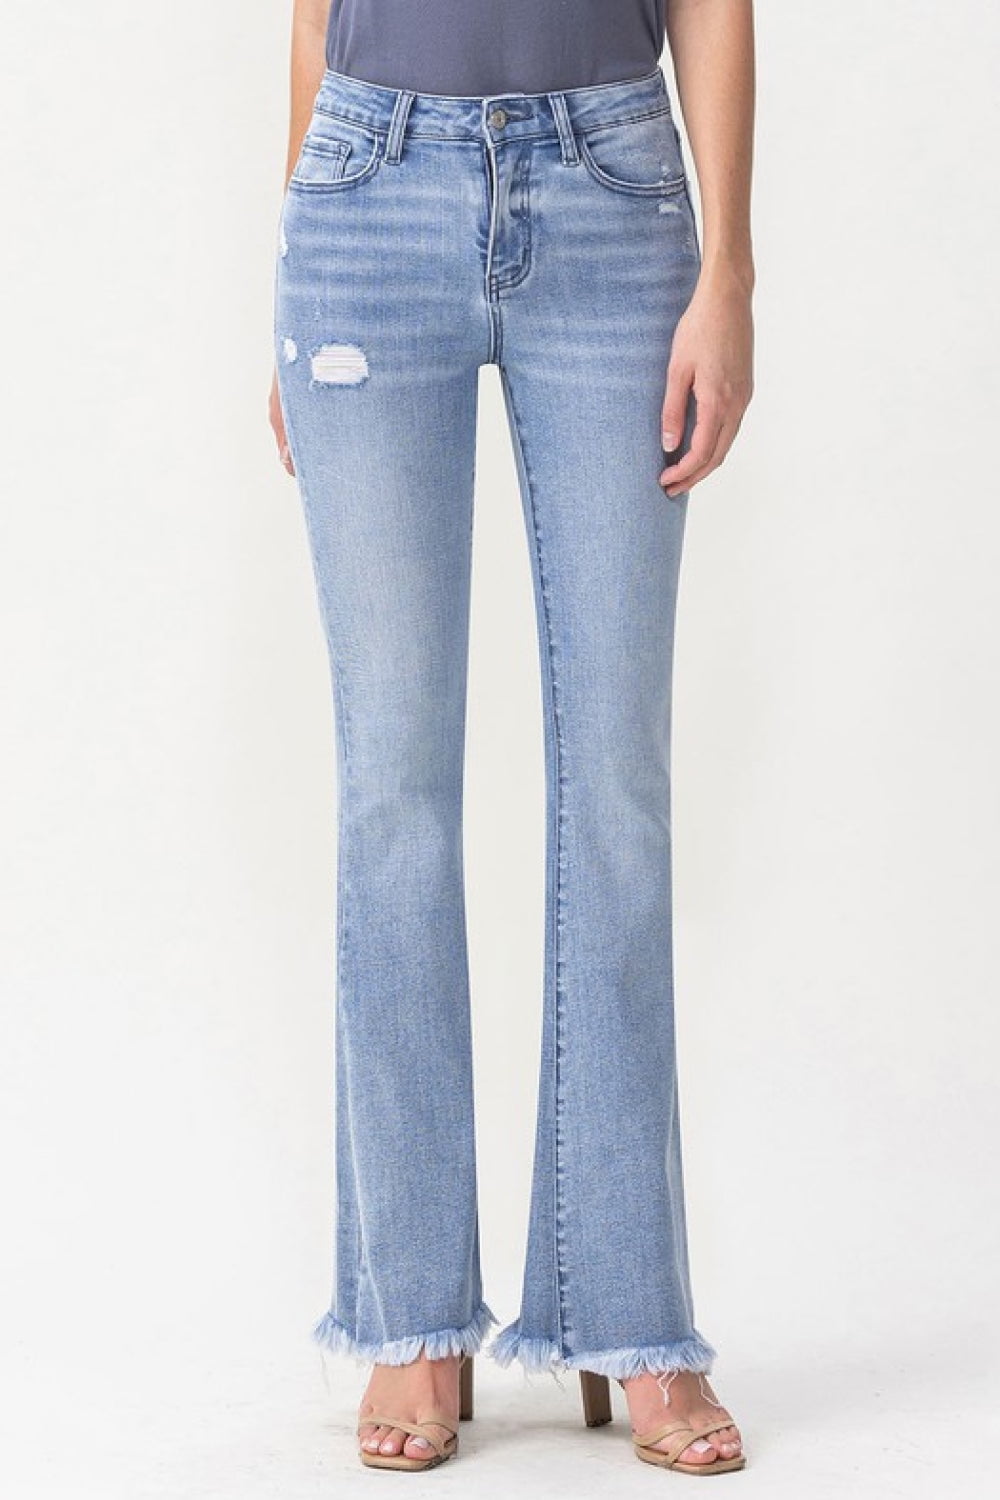 Lovervet Full Size Evie High Rise Fray Flare Jeans - Walmart.com